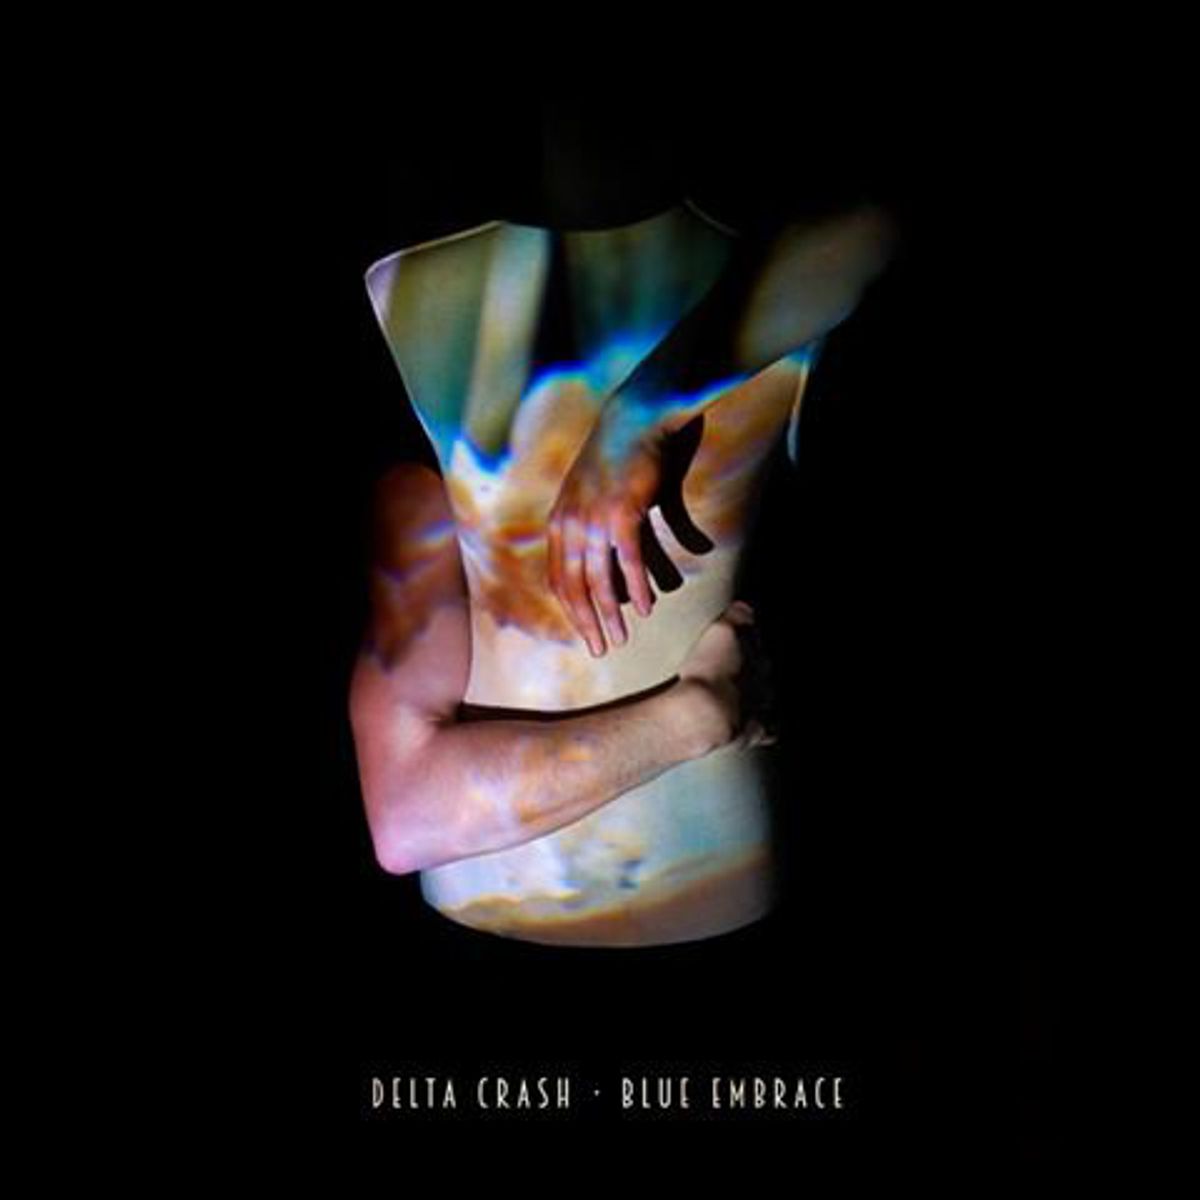 Delta Crash - Blue Embrace ep